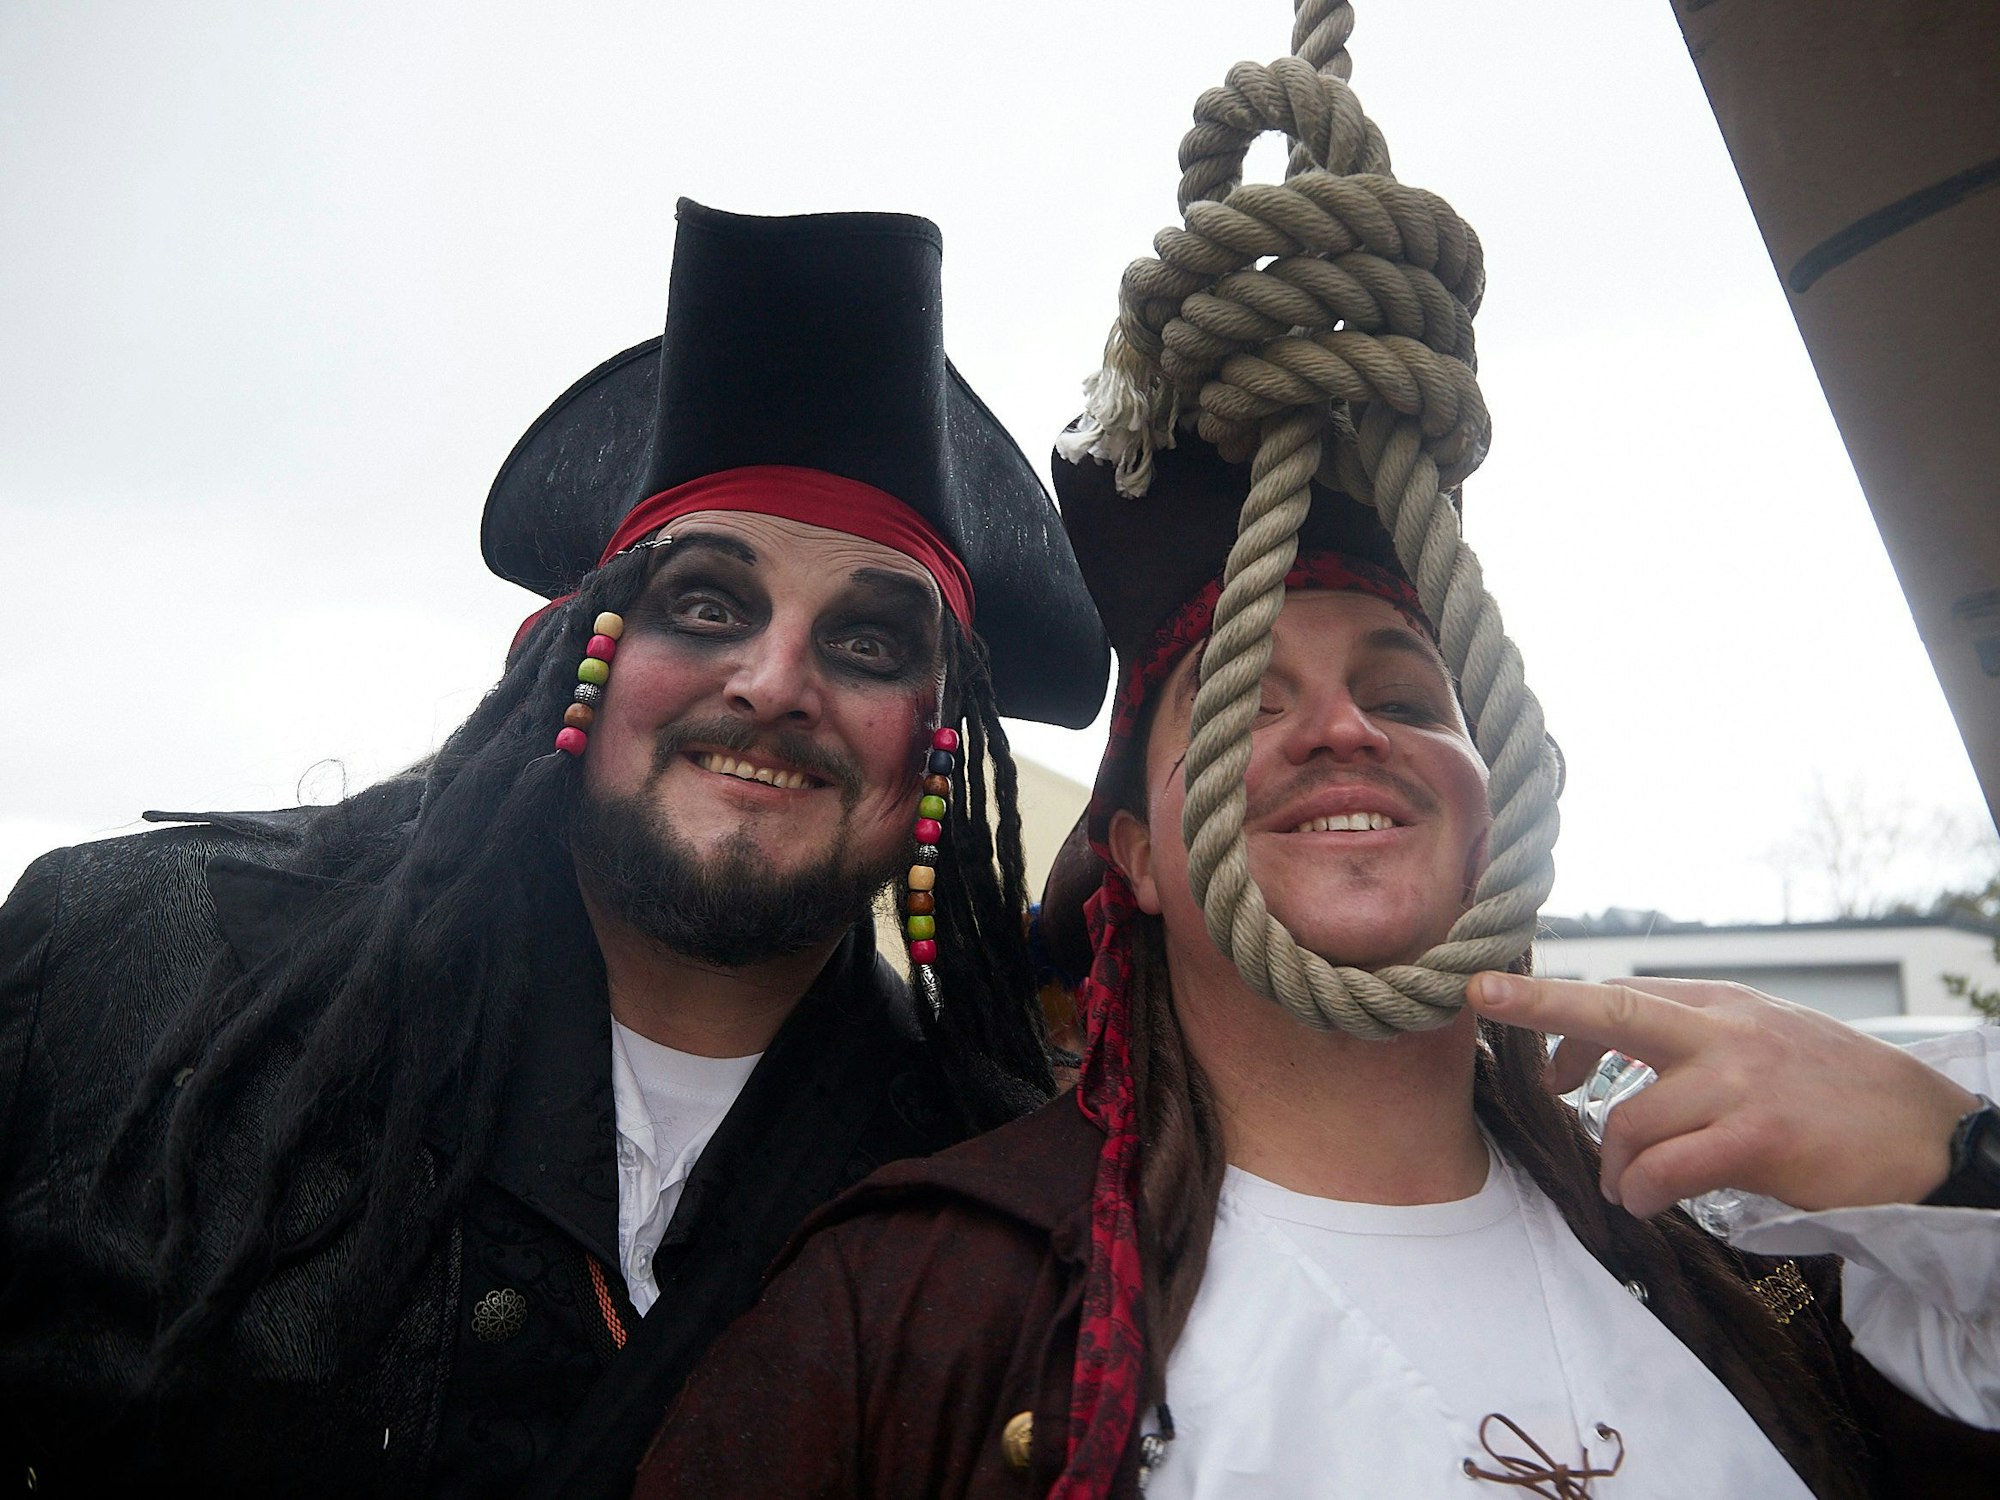 Die Roderather Piraten hatten einen echten Piratenhumor.